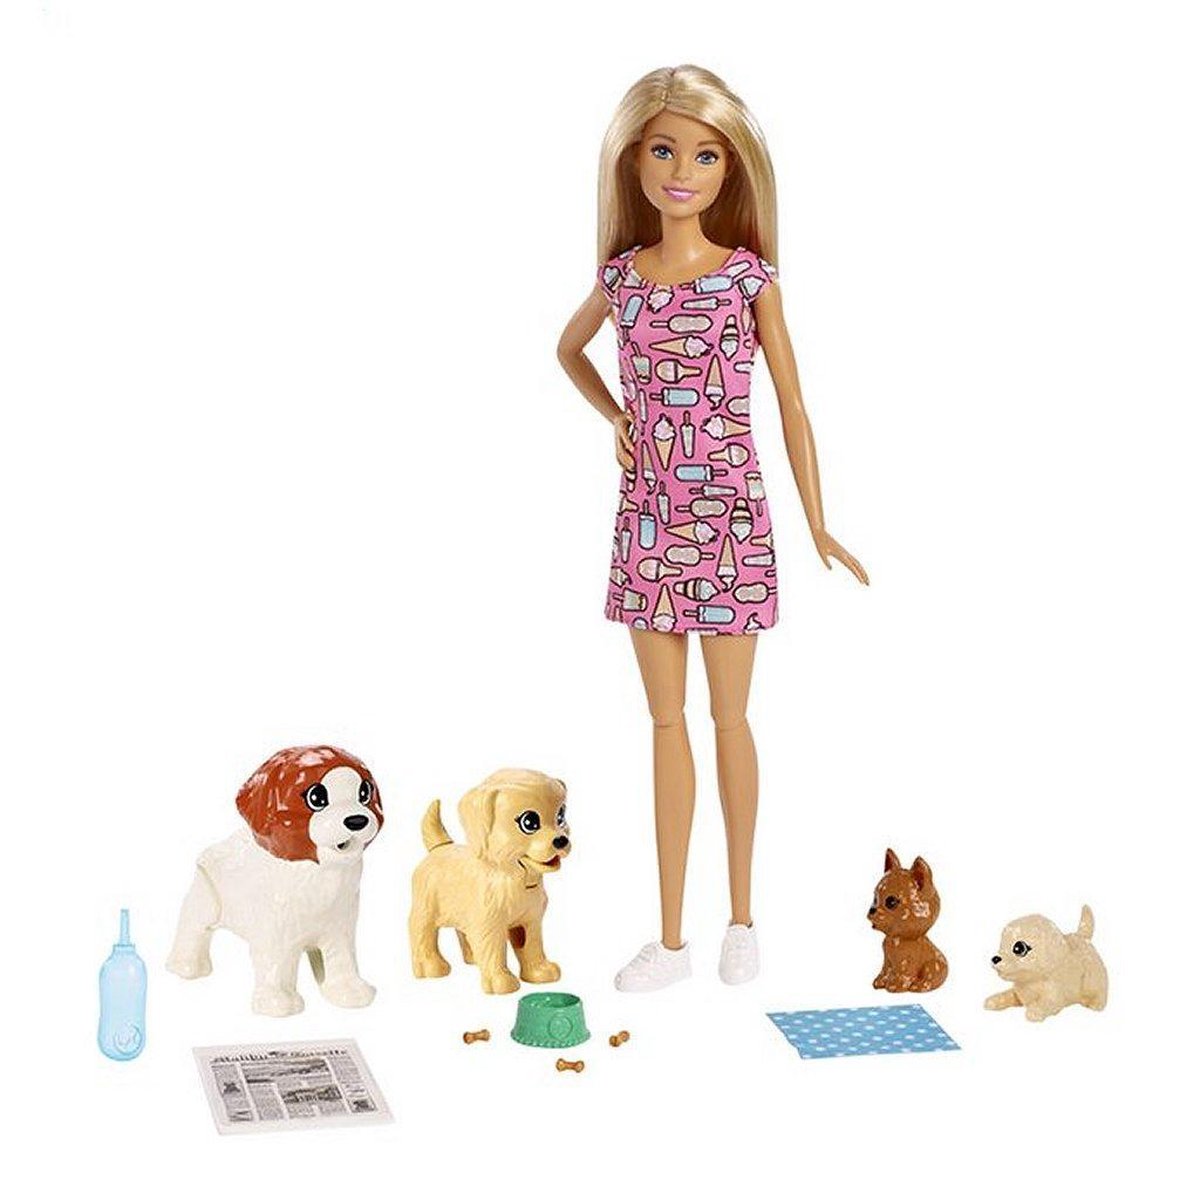 Barbie anniversaire des chiens - Barbie